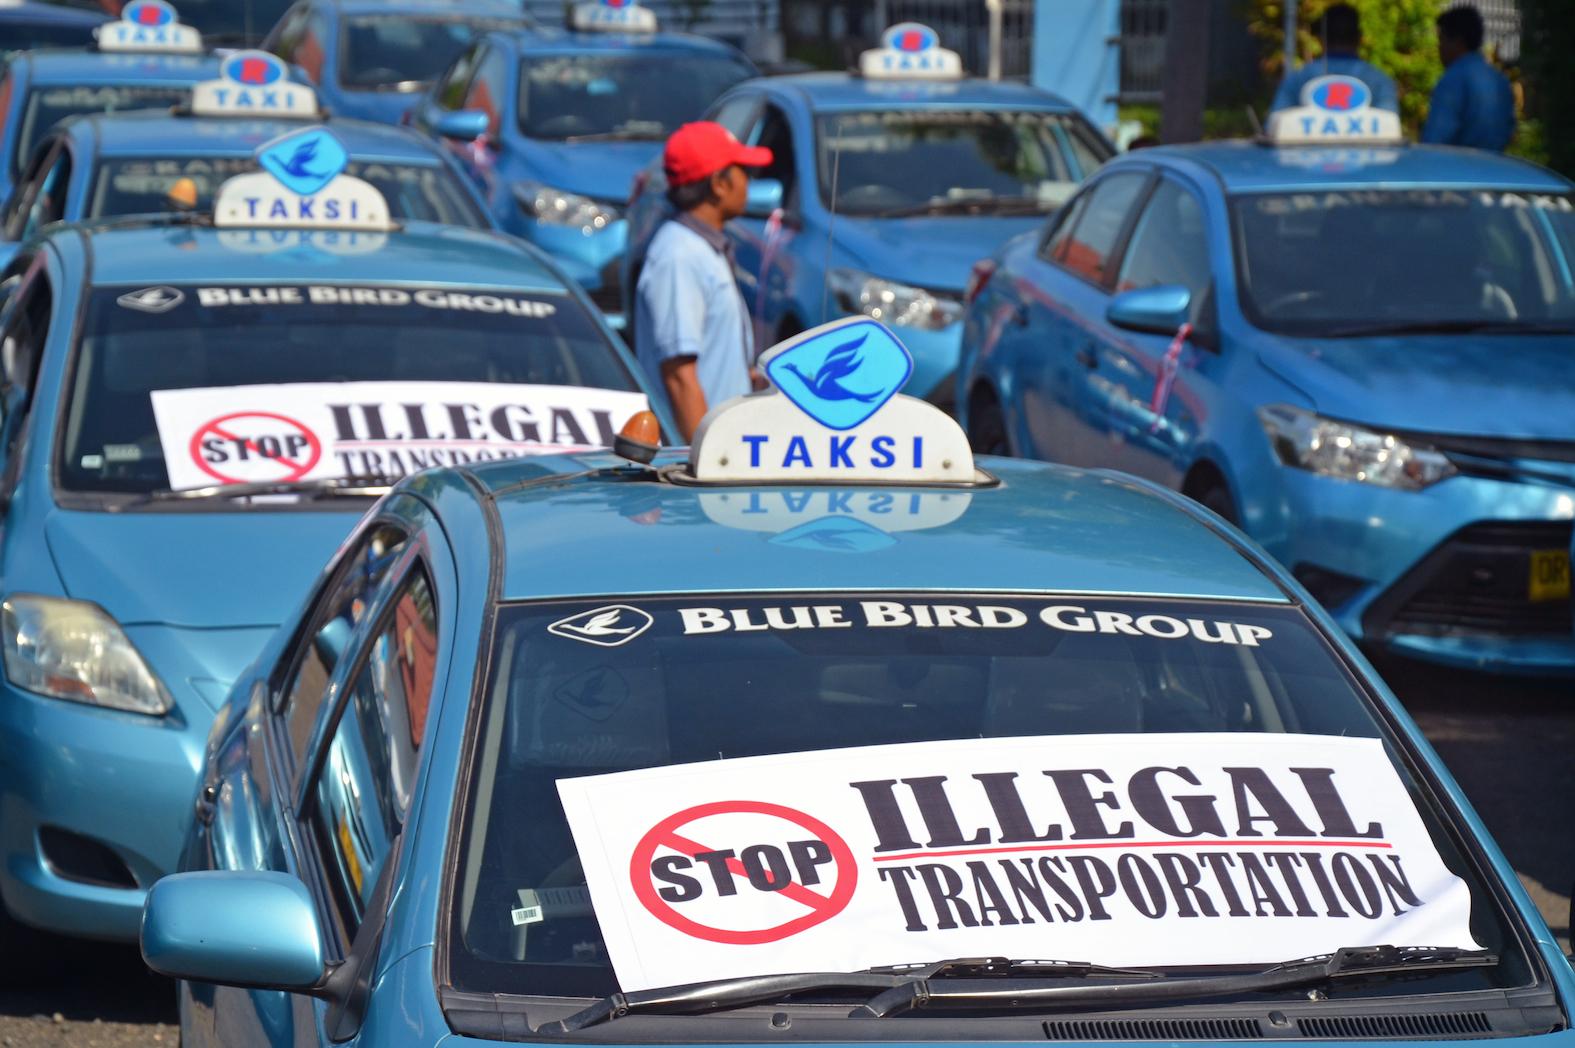 Tertekan Taksi Online, Blue Bird Masuk 10 Saham Terburuk 2016. Siapa Lainnya?